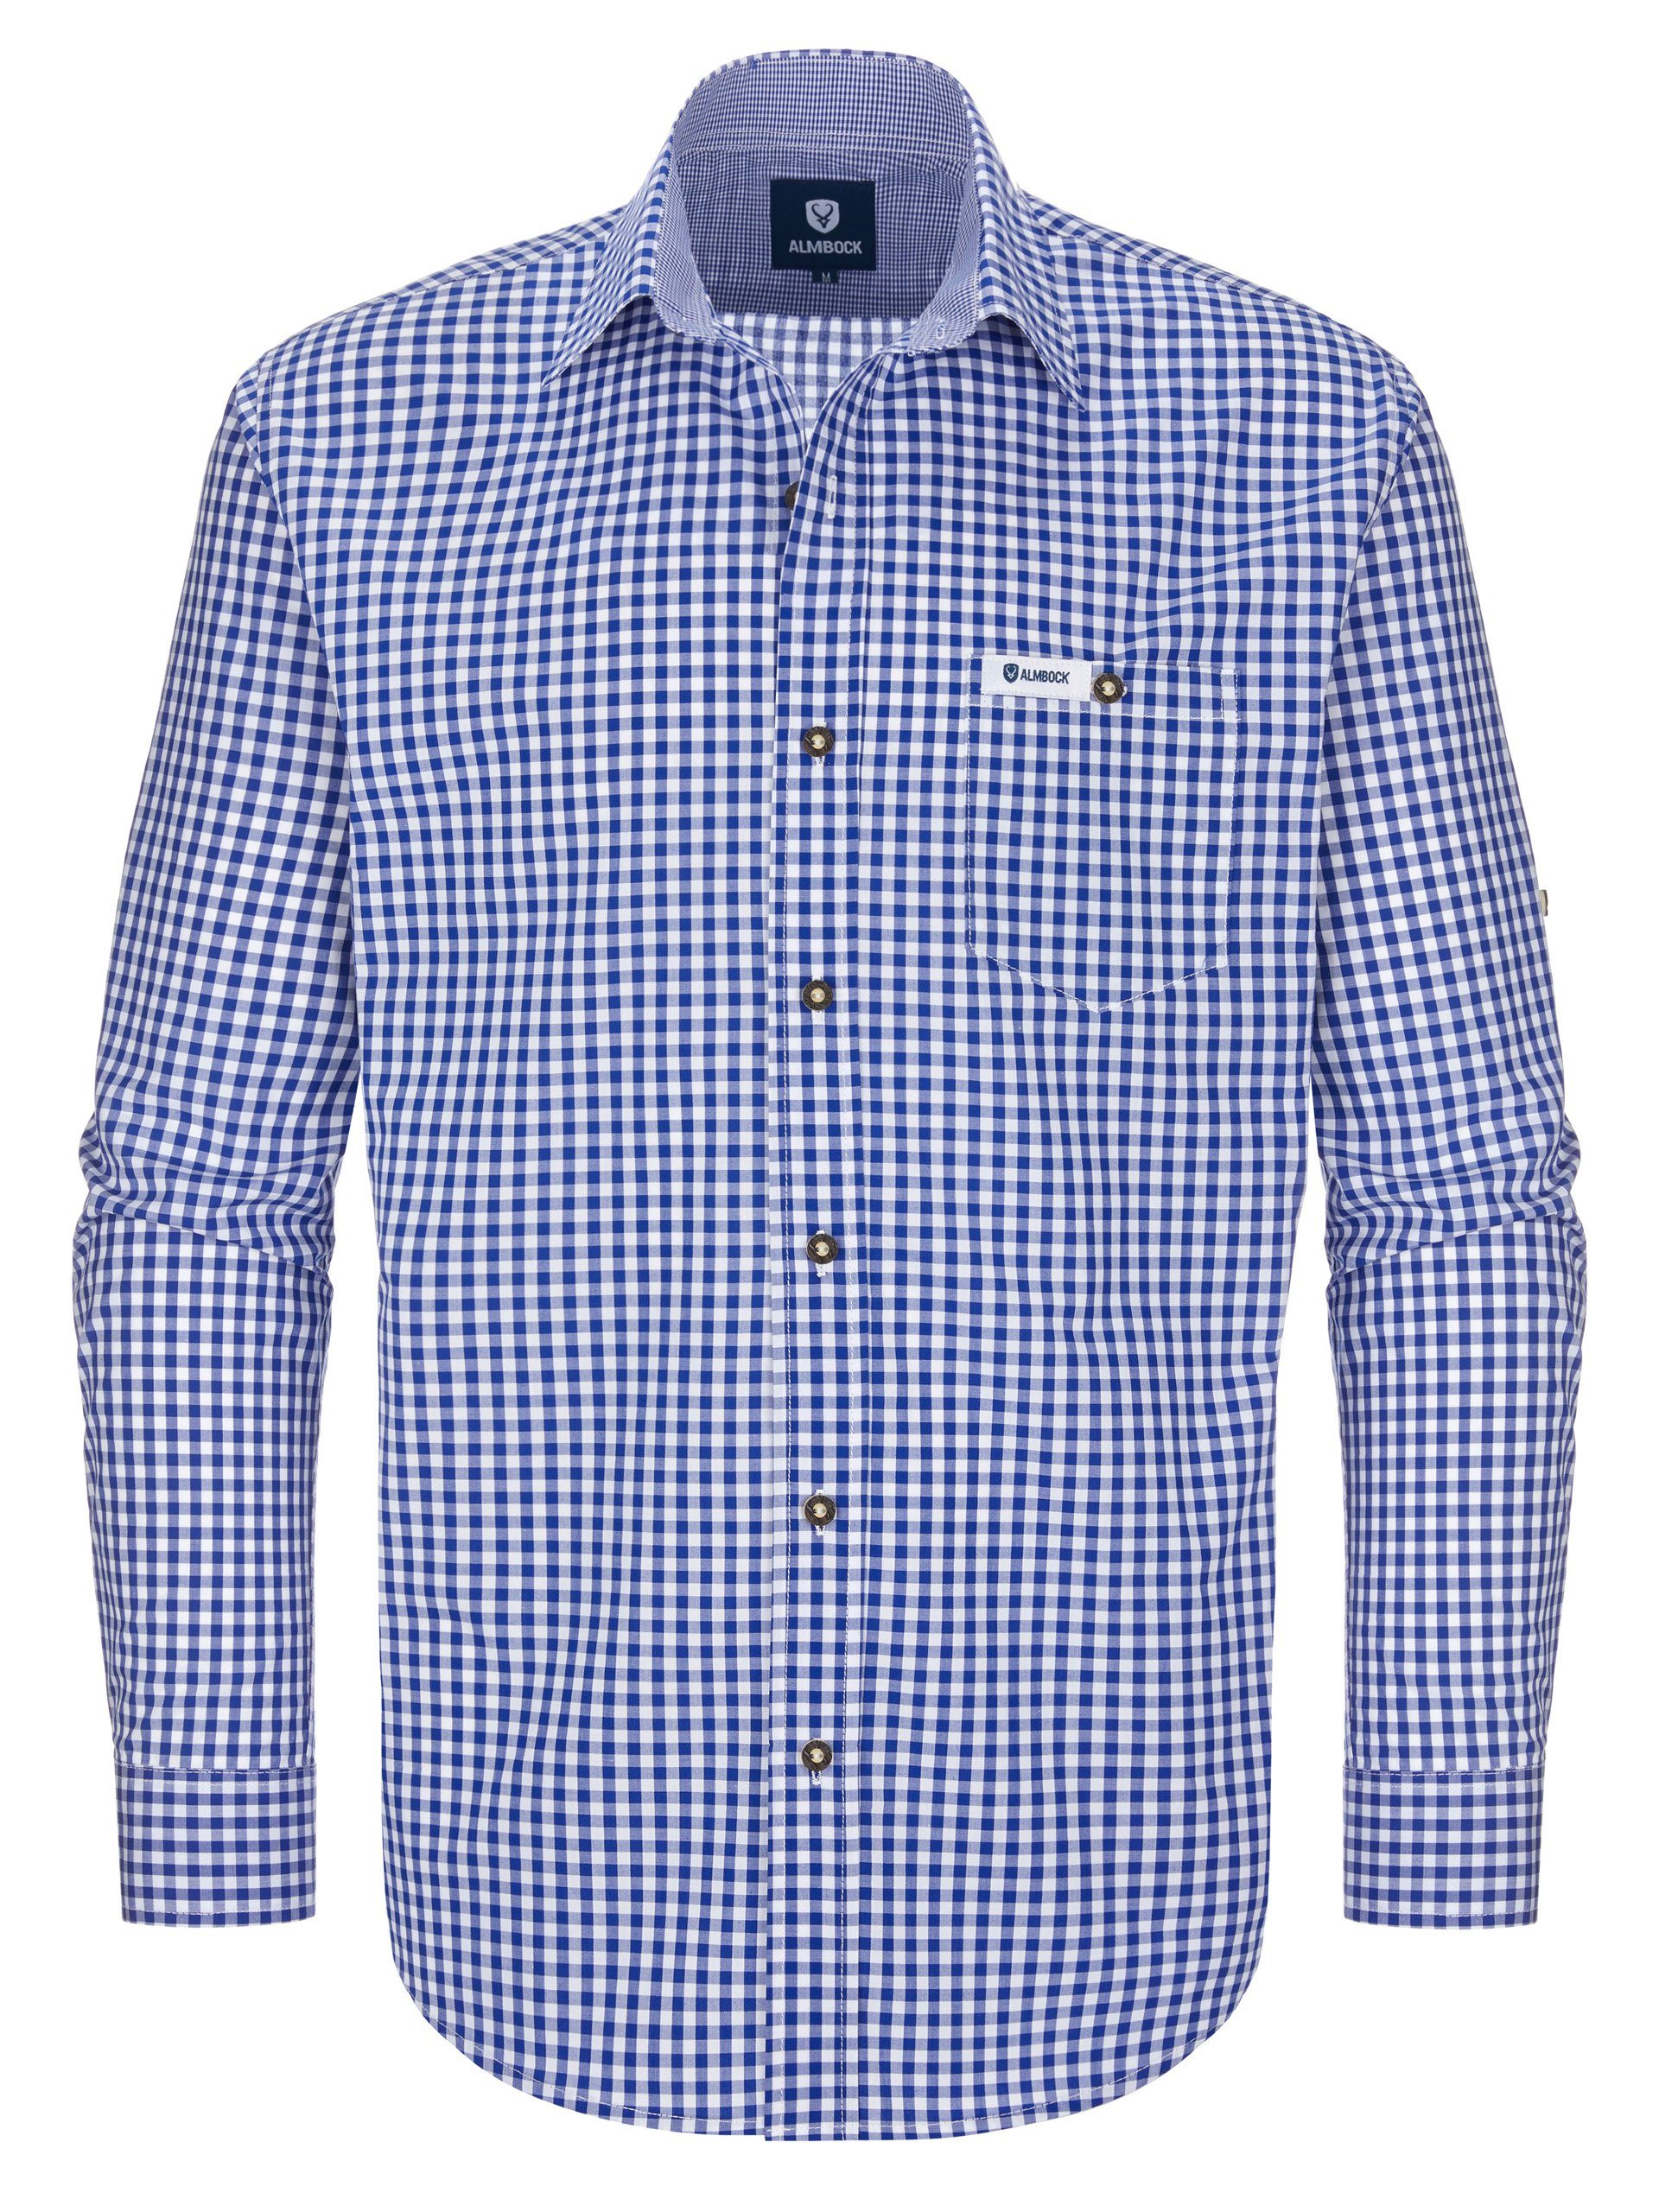 Almbock Trachtenhemd »Trachten Hemd Alois« blau-weiß-kariert online kaufen  | OTTO